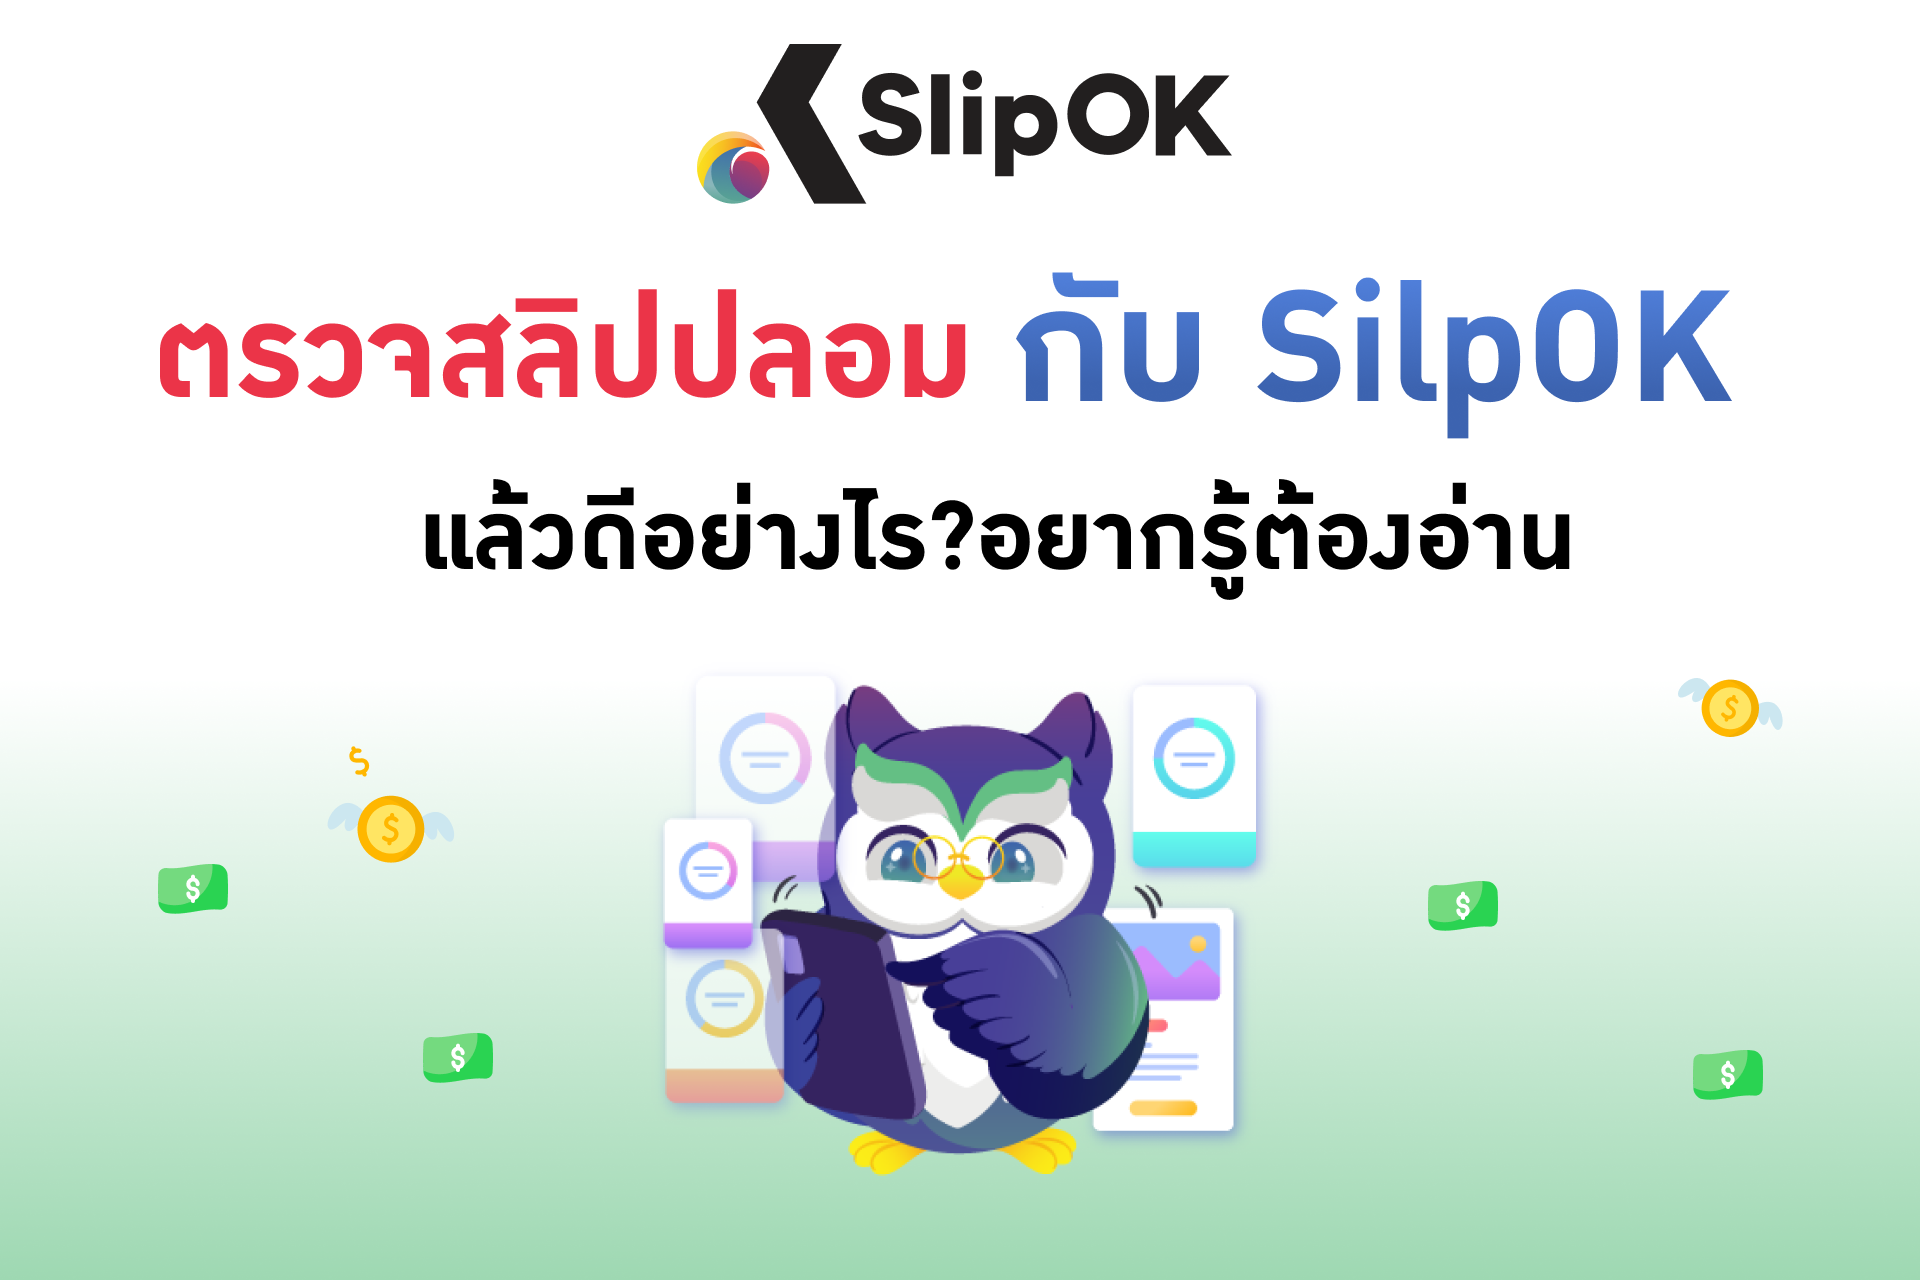 ตรวจสลิปปลอม กับ SilpOK แล้วดีอย่างไร ? อยากรู้ต้องอ่าน